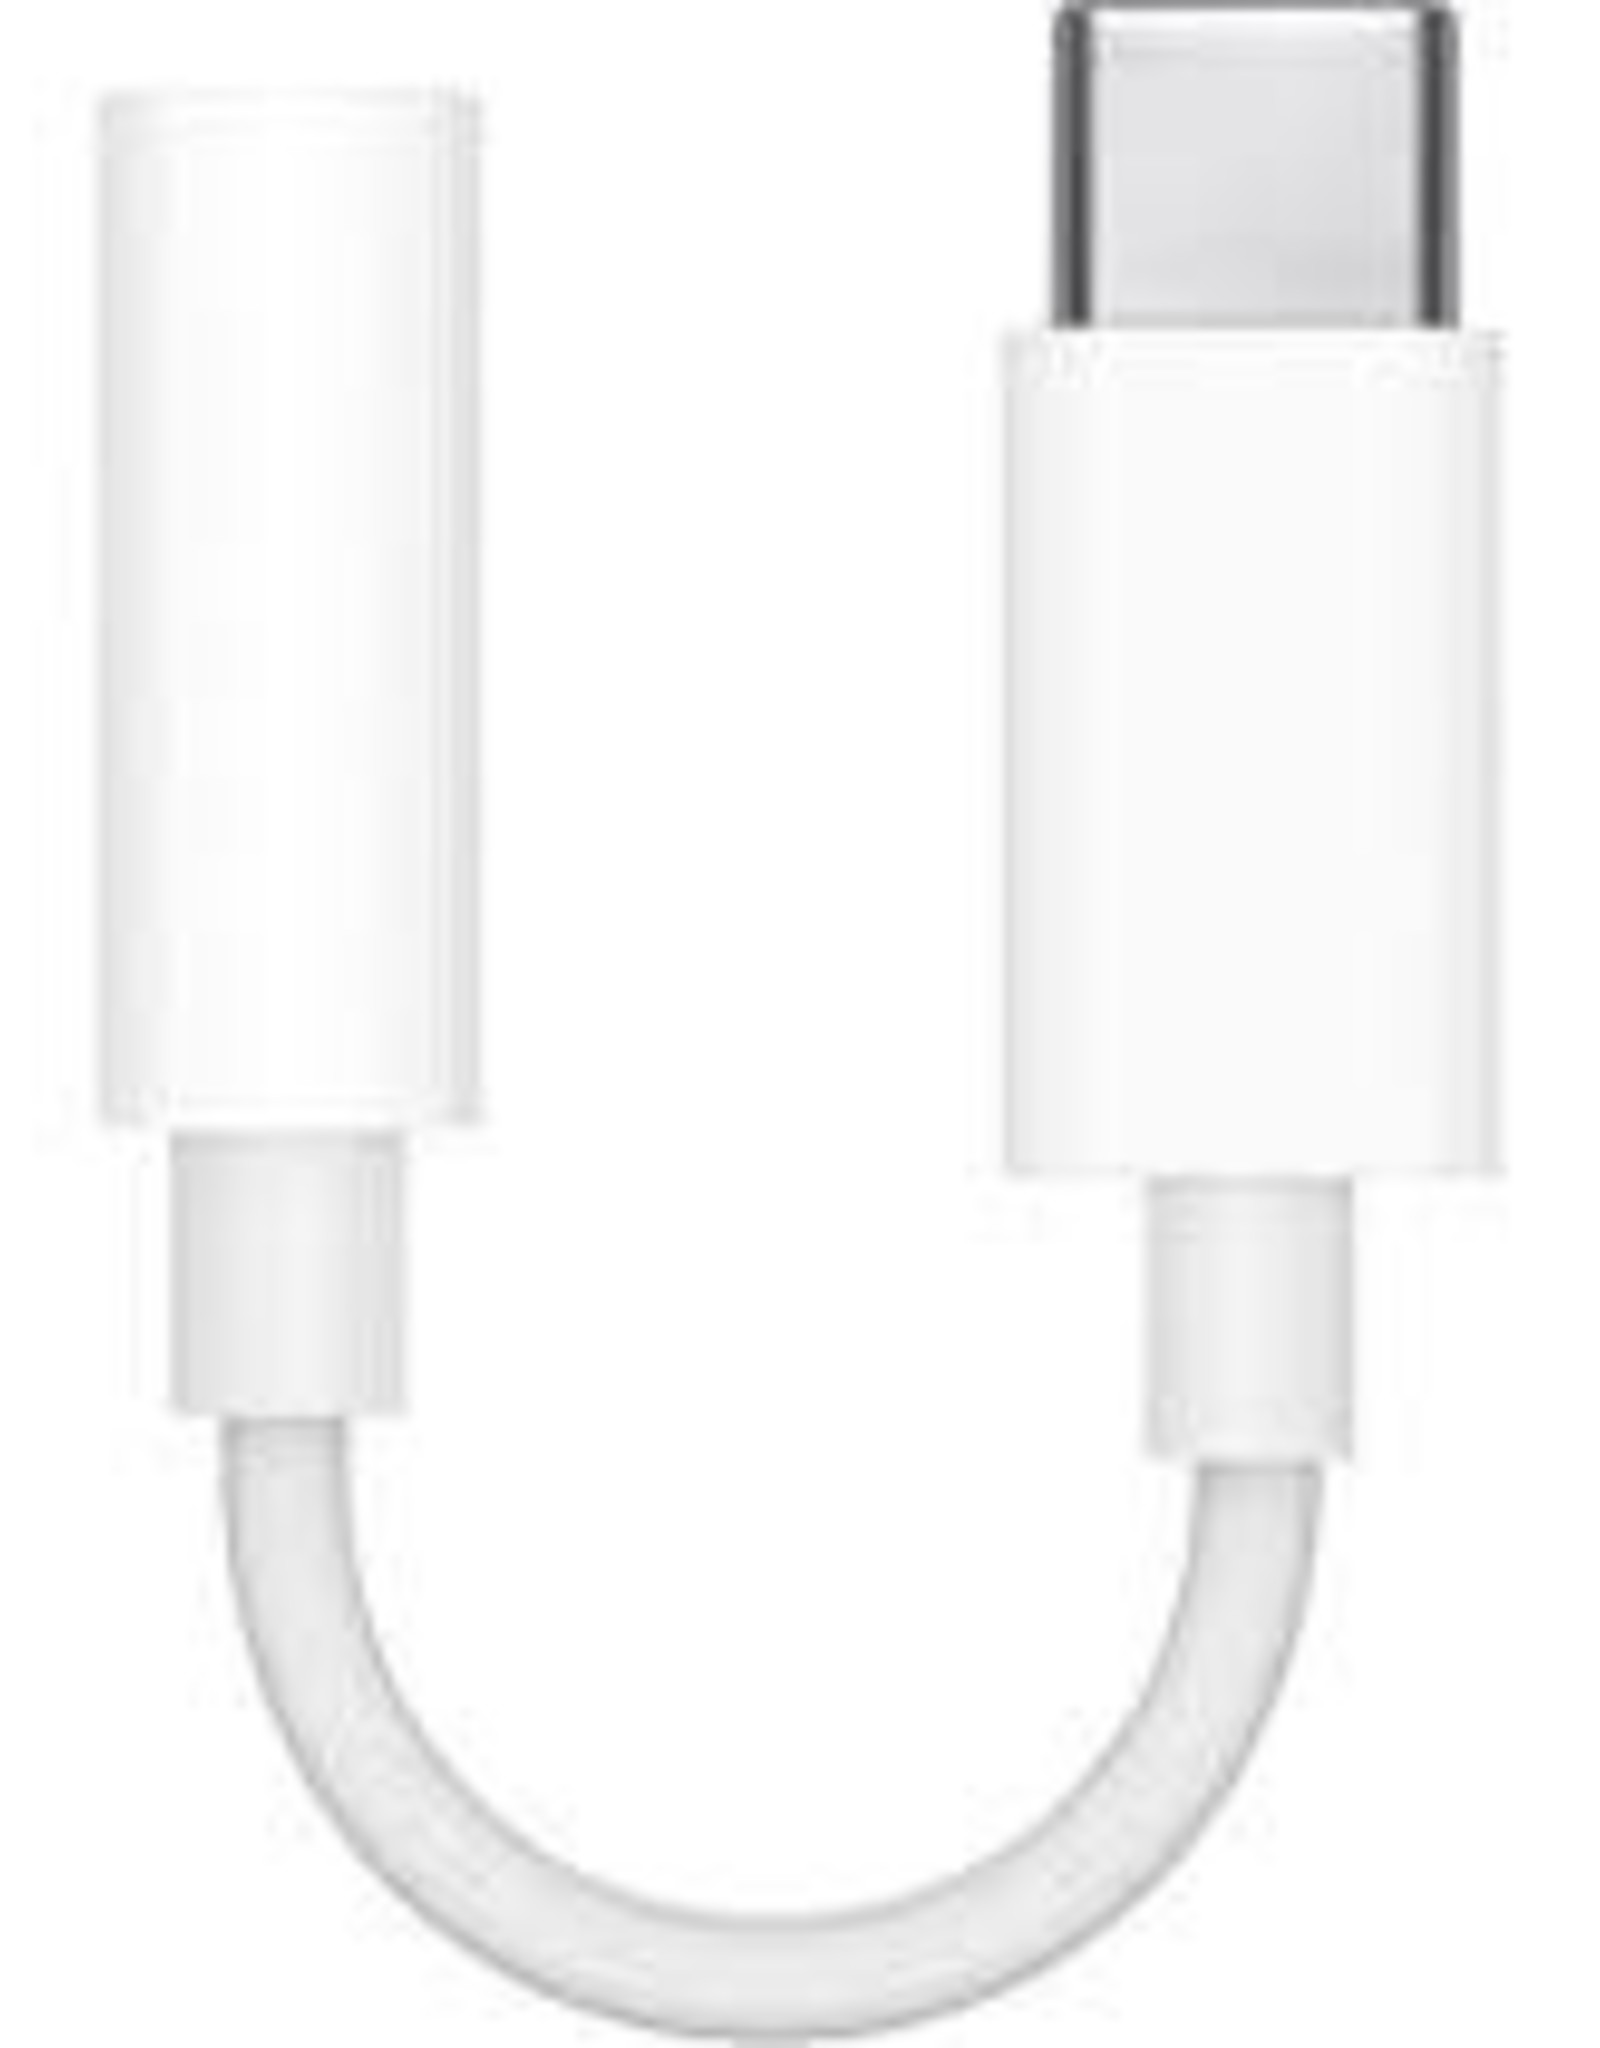 Apple Apple USB-C to headphone Jack